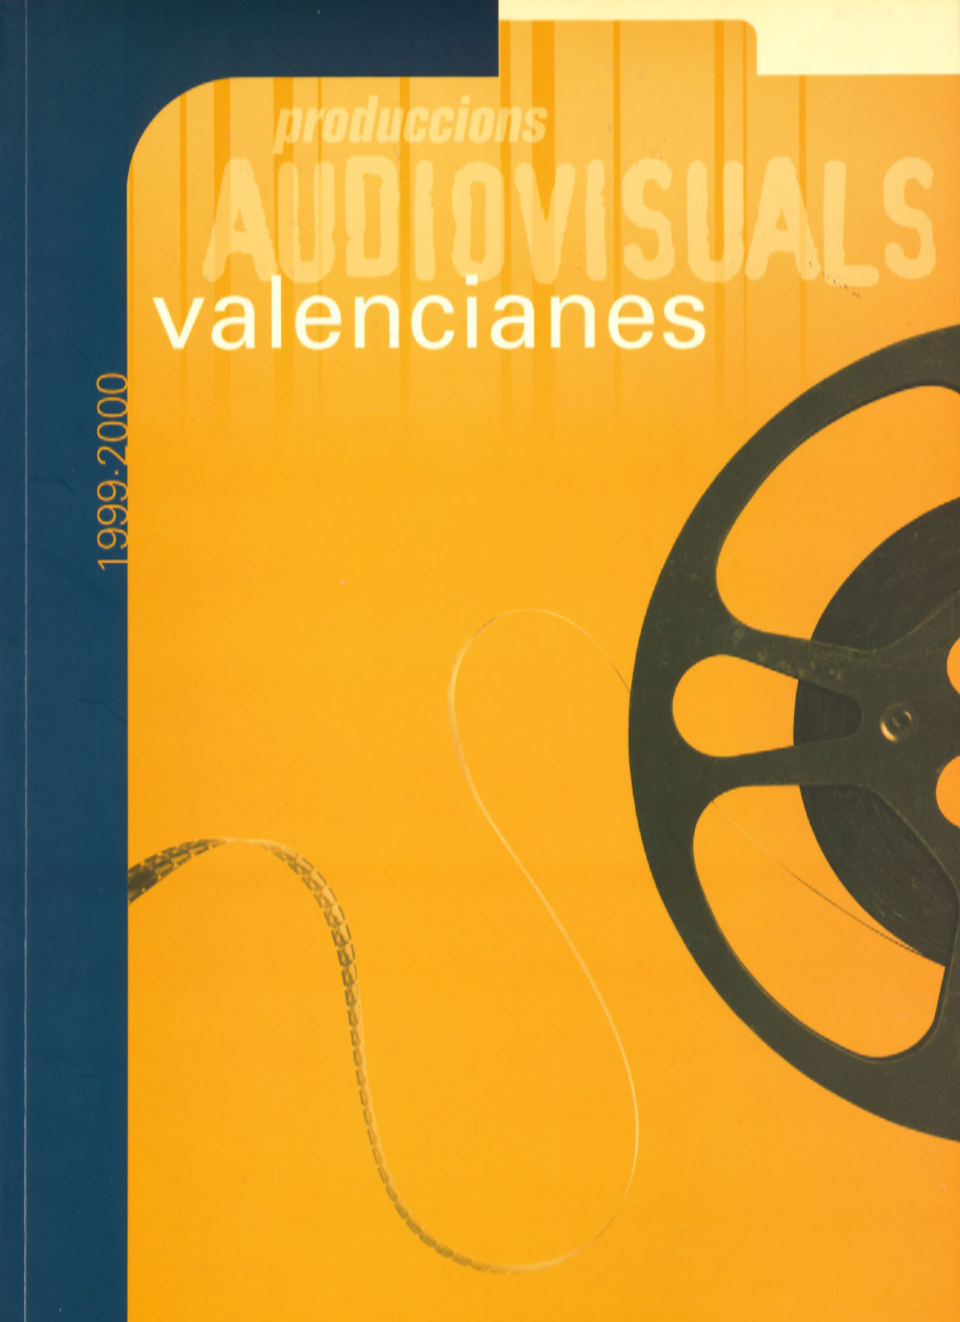 1999-2000 Catàleg Produccions Audiovisuals Valencianes 'Una música, un poble'